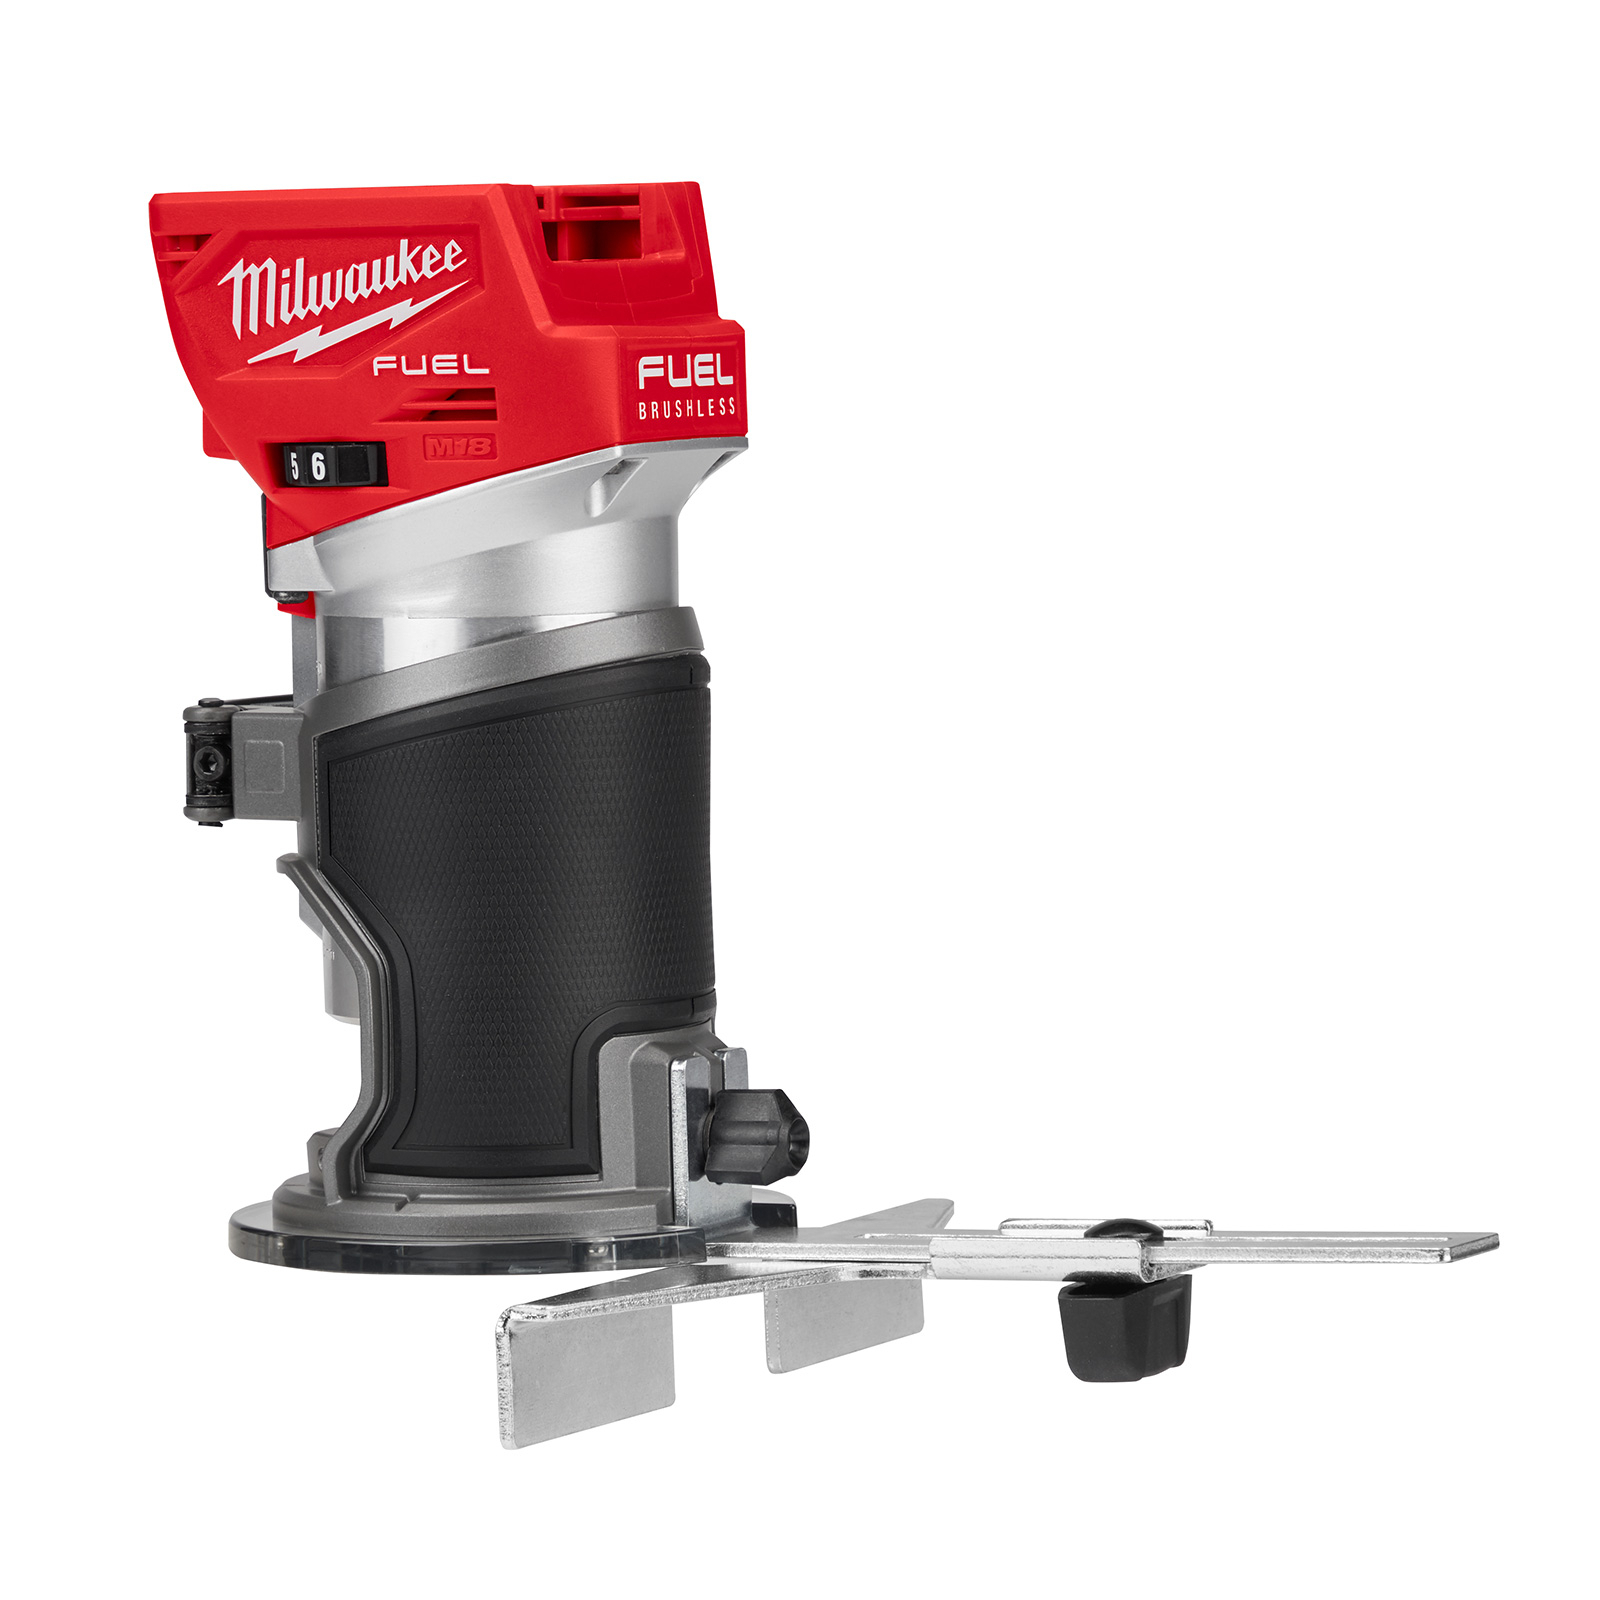 Milwaukee 18V Fuel Brushless Laminate Trimmer (tool only) M18FTR-0